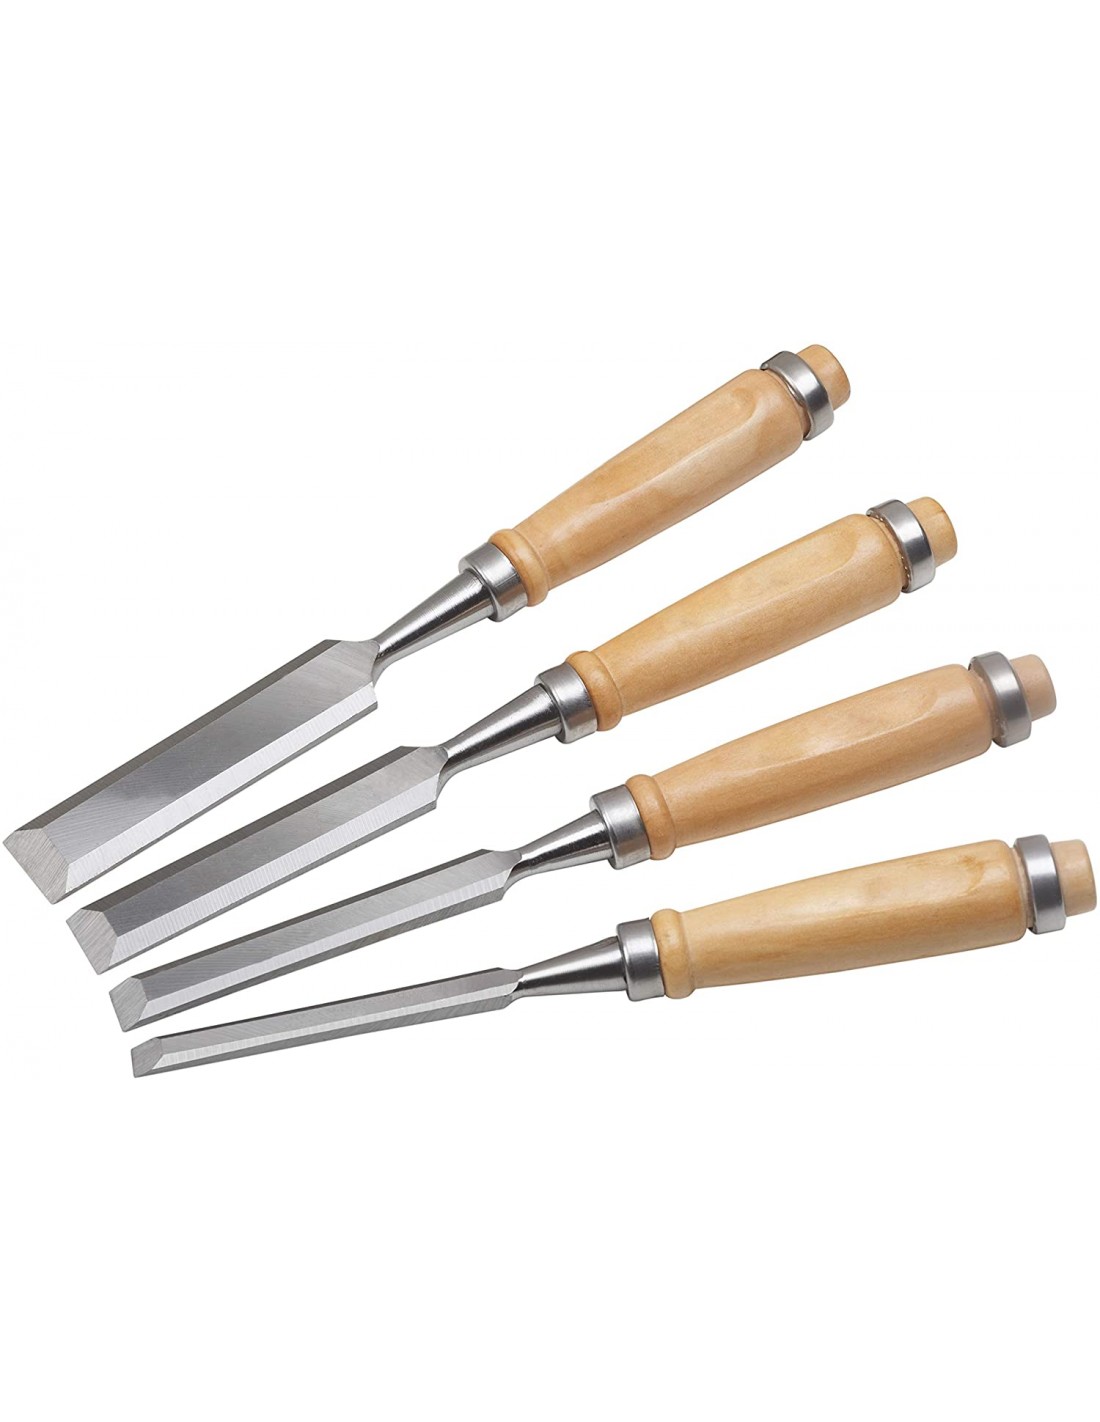 Serie scalpelli da legno Fervi articolo 0168. 